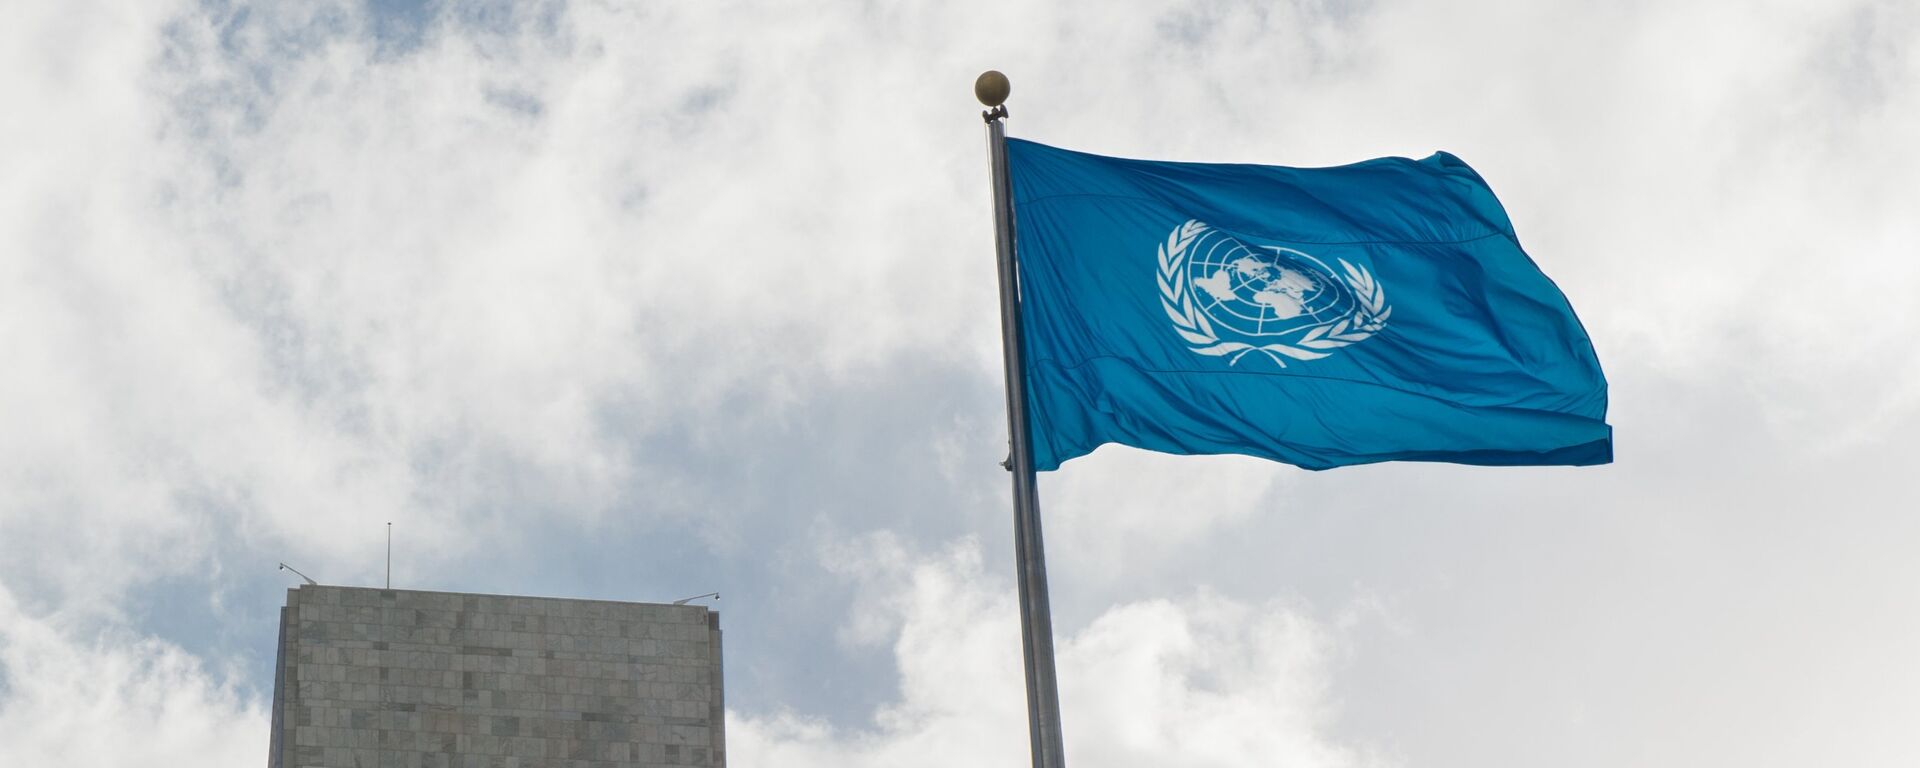 La bandera de la ONU - Sputnik Mundo, 1920, 23.11.2021